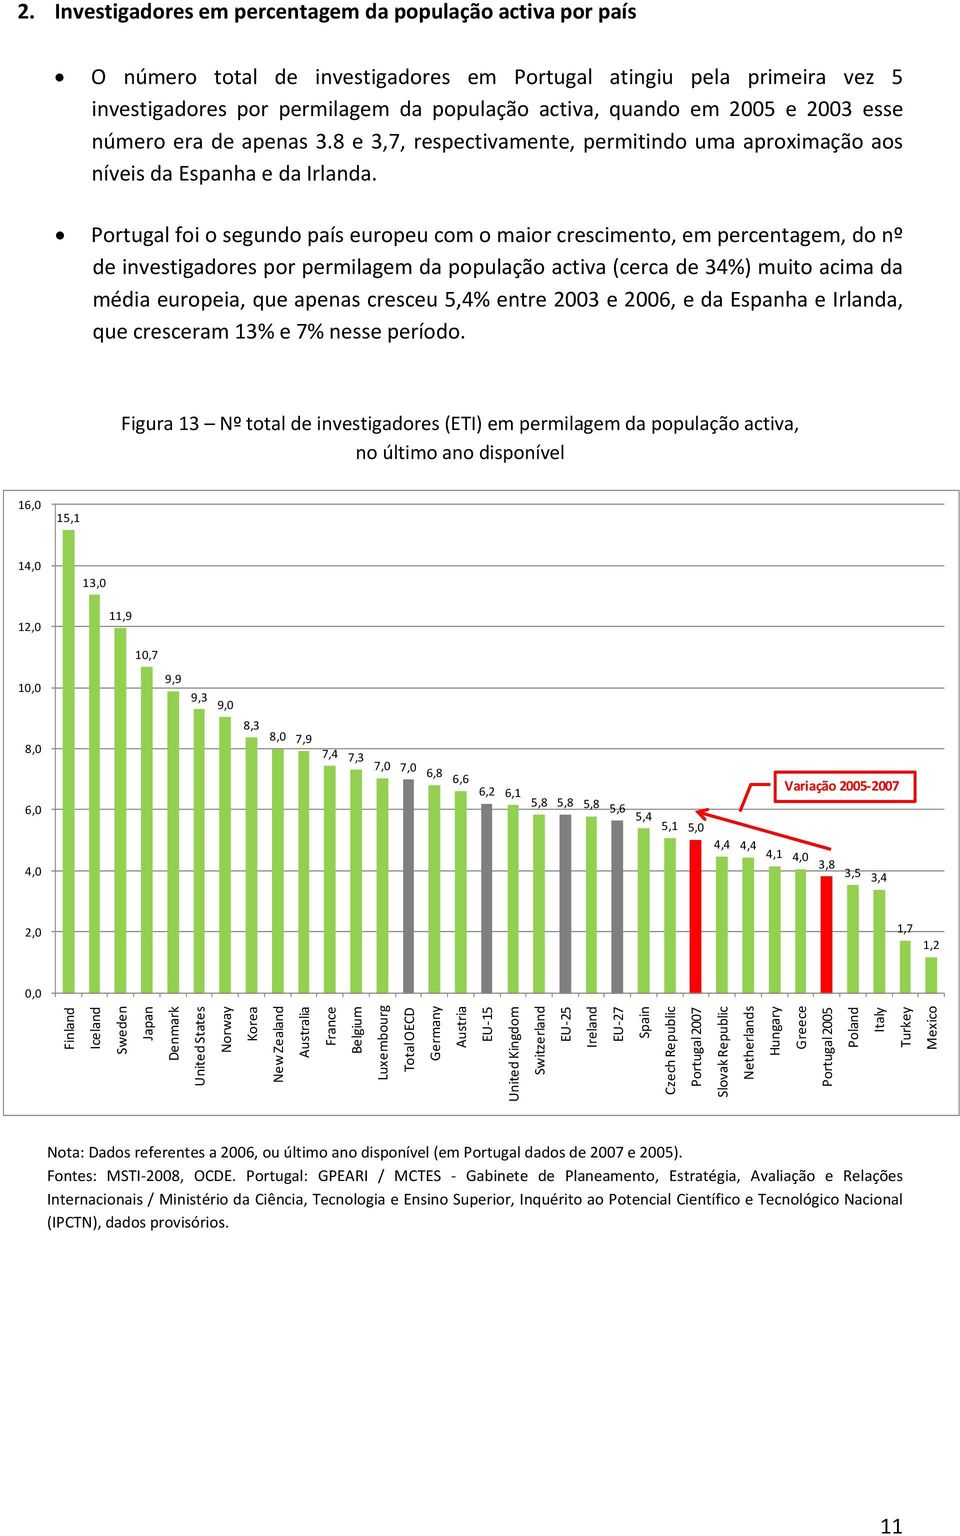 Portugal foi o segundo país europeu com o maior crescimento, em percentagem, do nº de investigadores por permilagem da população activa (cerca de 34%) muito acima da média europeia, que apenas